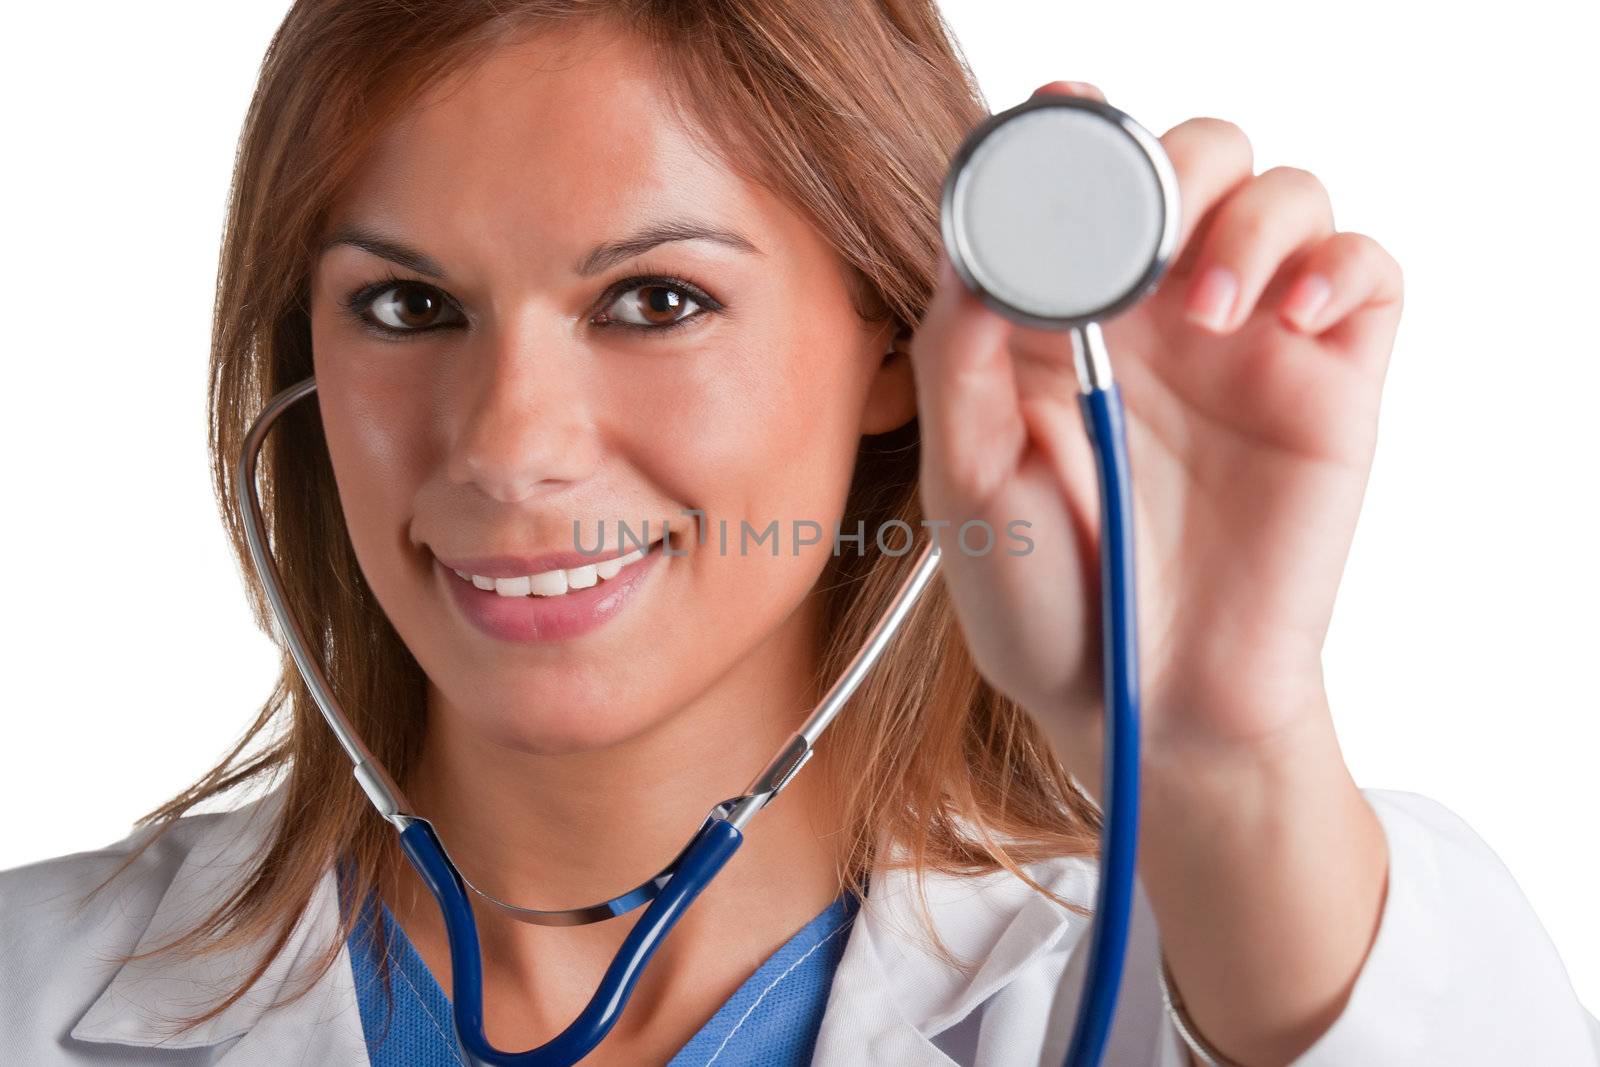 Female Doctor by ruigsantos